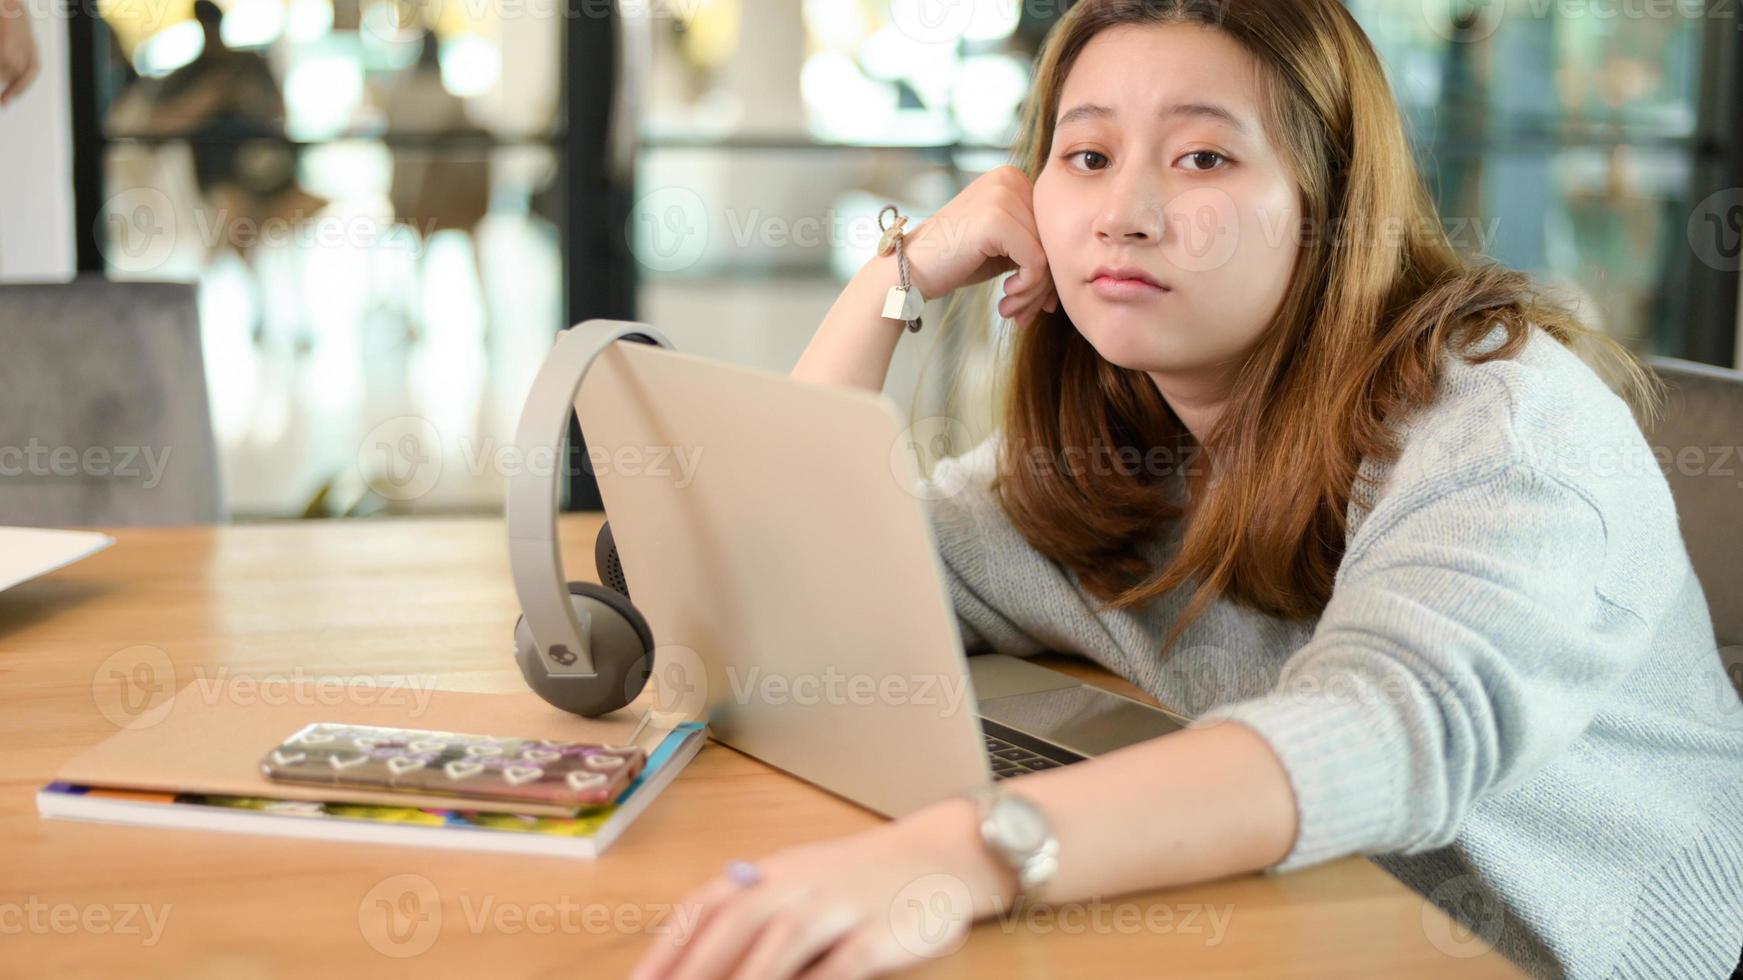 jovem asiática olhando para a câmera, fazendo uma cara confusa, sentar e relaxar enquanto estudava online em casa. foto